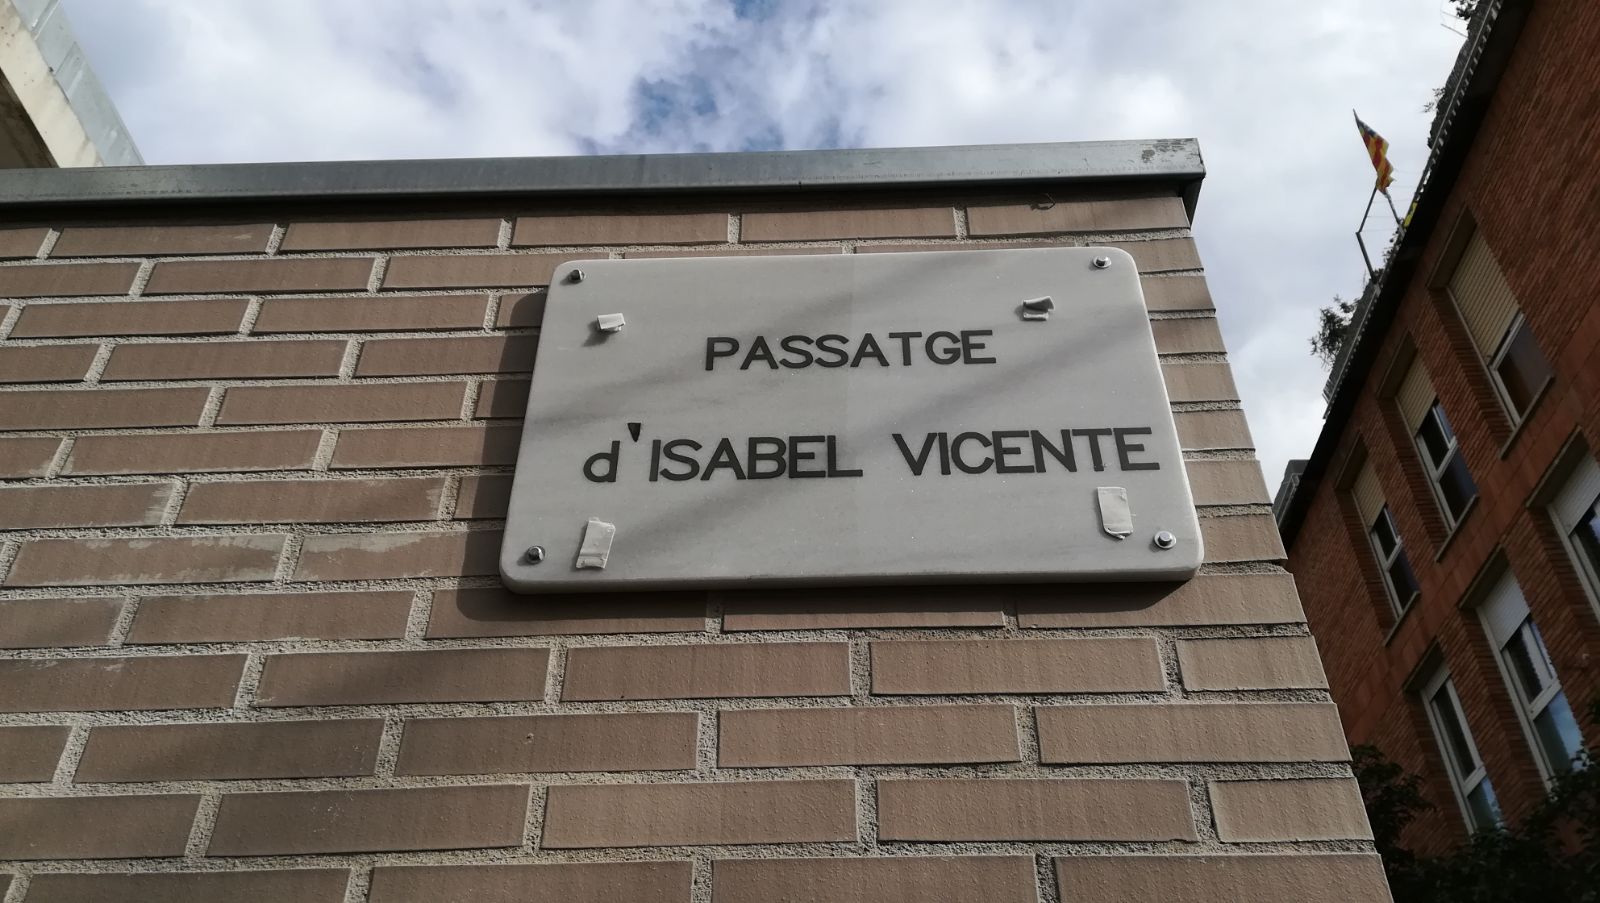 Placa del Pasaje de Isabel Vicente, 2018